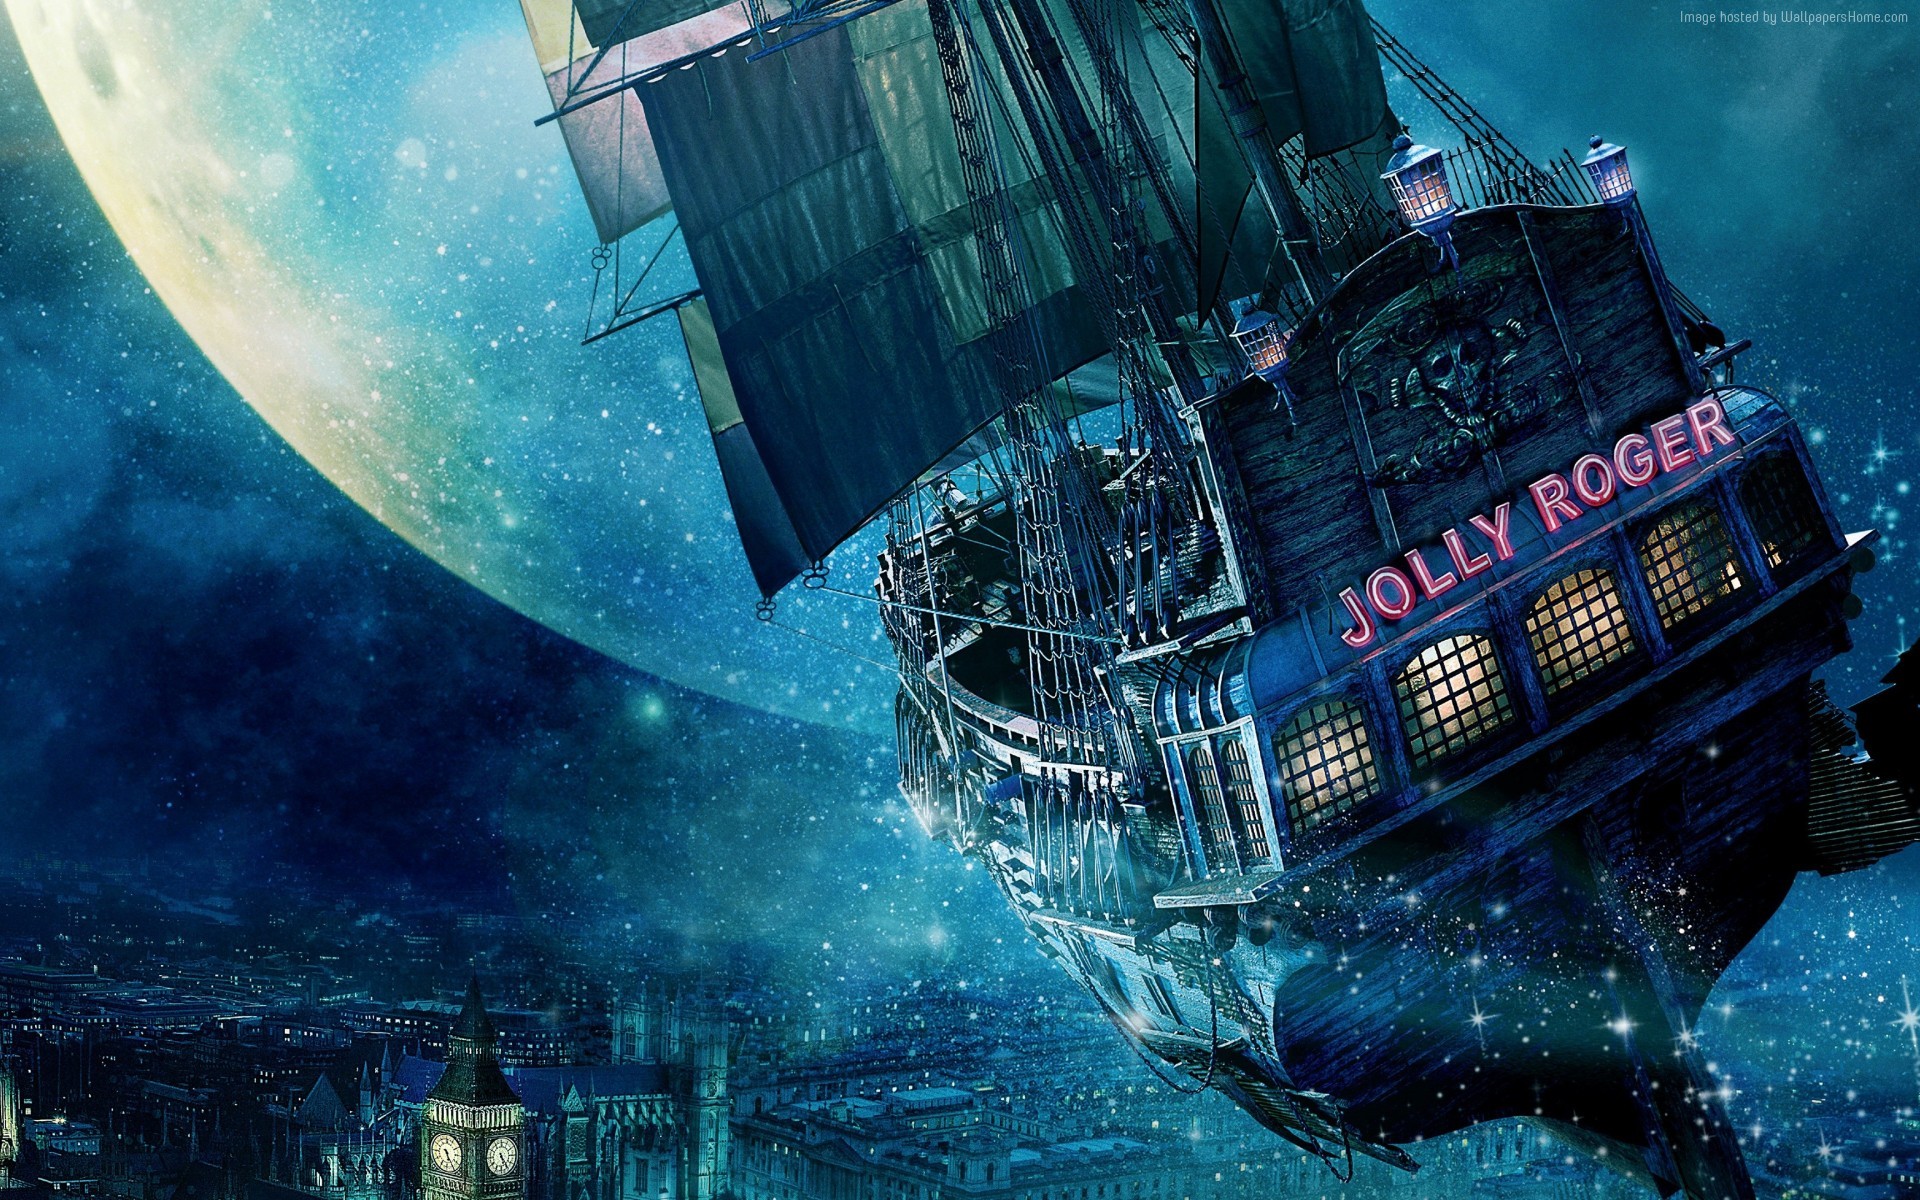 General 1920x1200 sailing ship Jolly Roger Peter Pan fantasy art Moon ship vehicle digital art